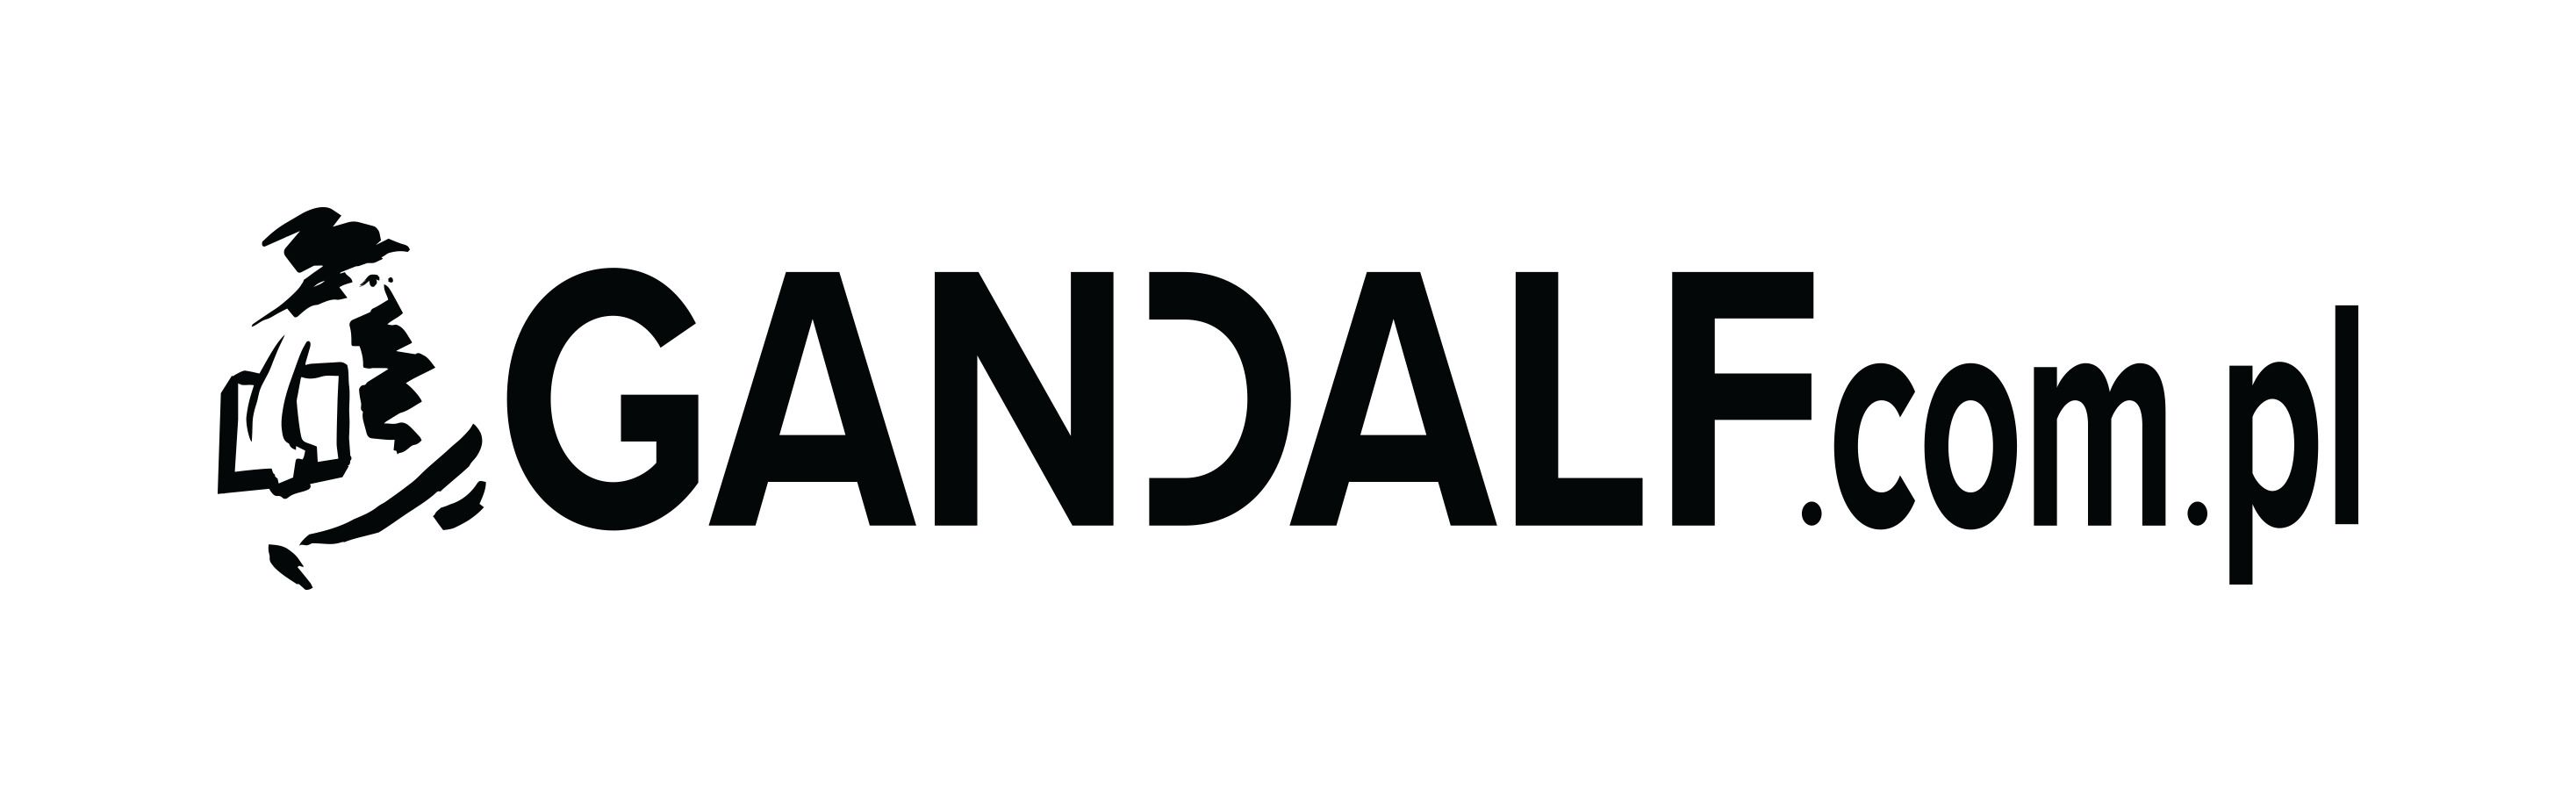 Firma GANDALF.com.pl logo